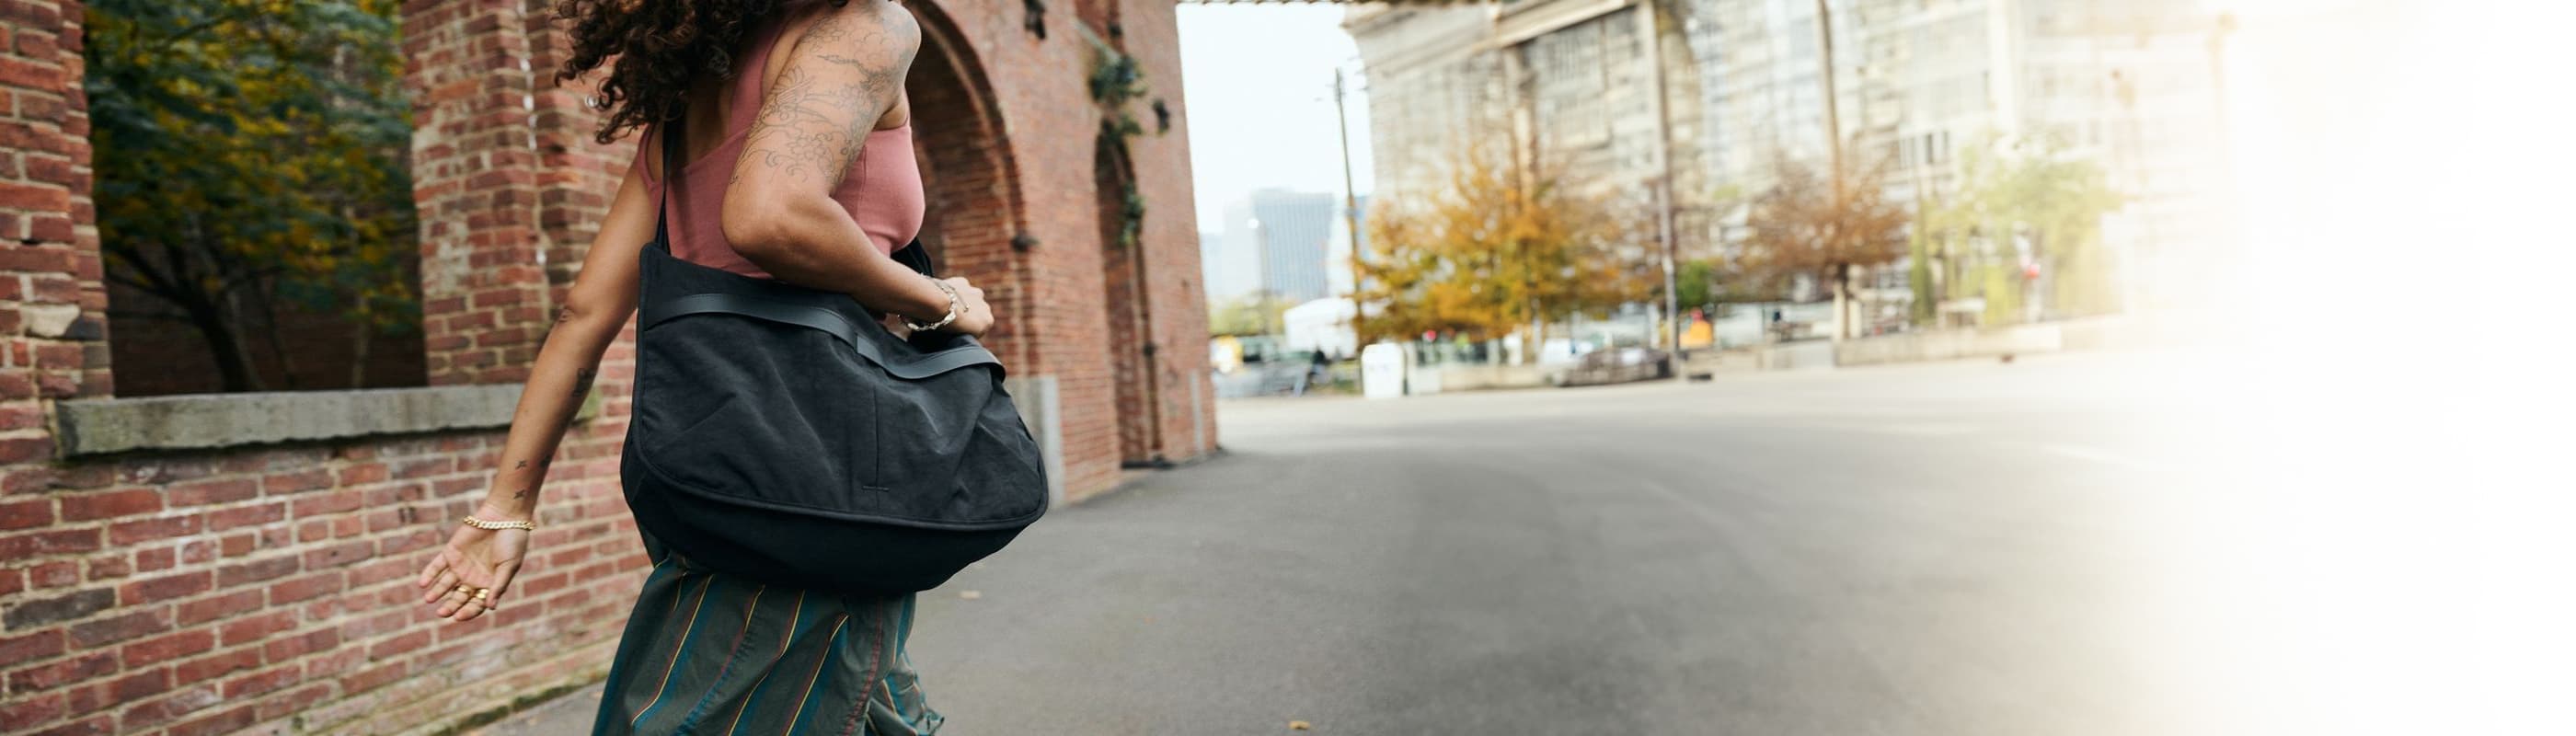 woman walking with the Yoyogi messenger bag